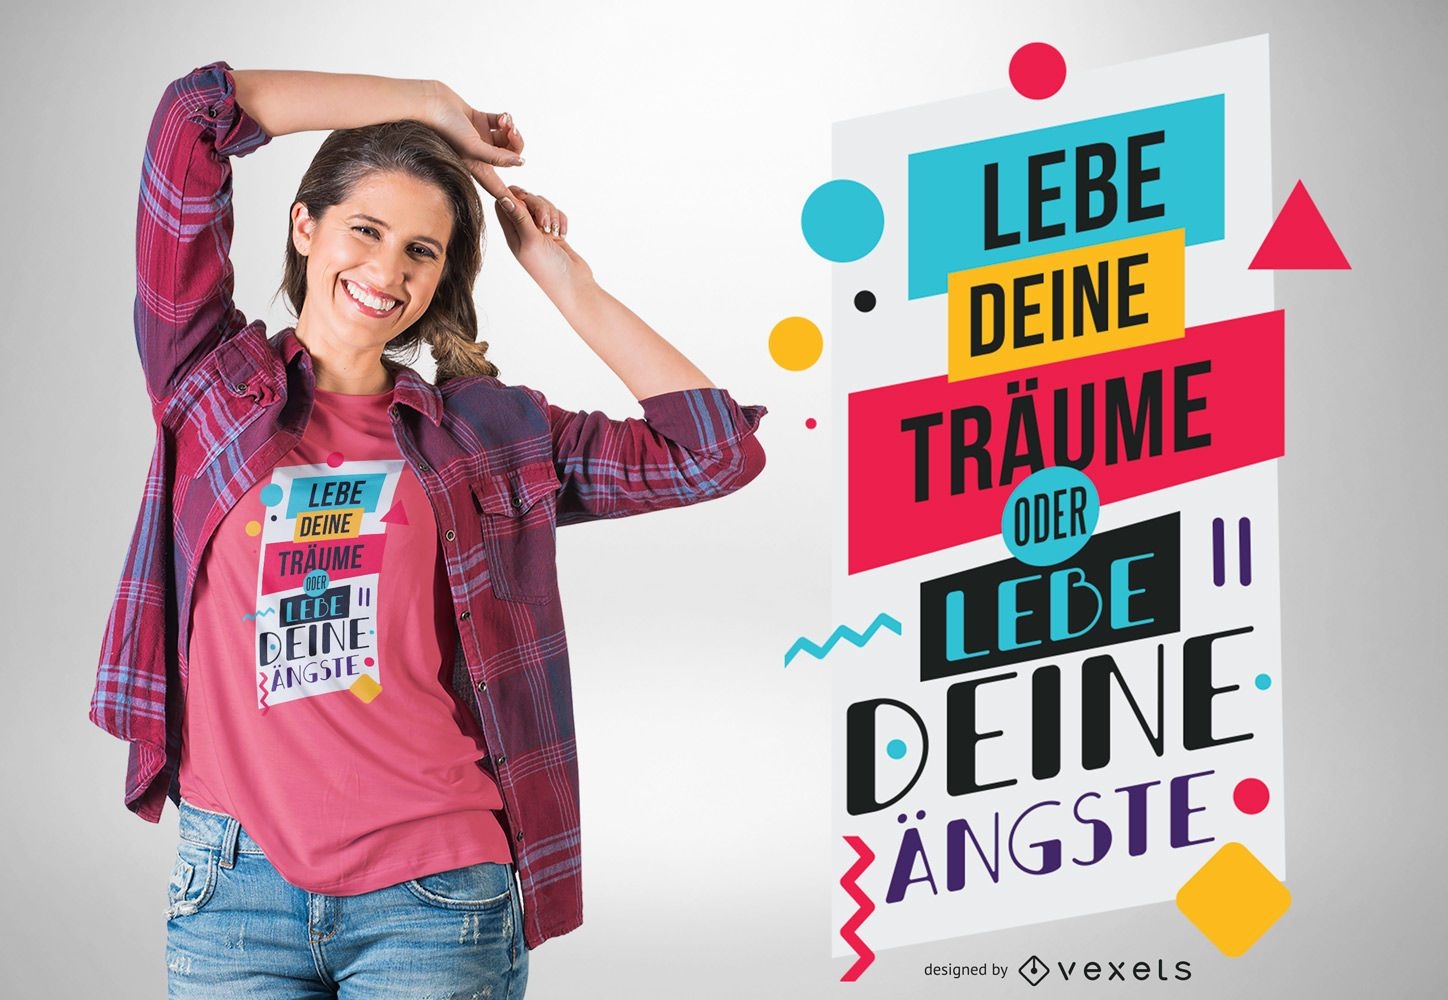 Lebe deine Tr?ume, farbenfrohes deutsches Zitat-T-Shirt-Design